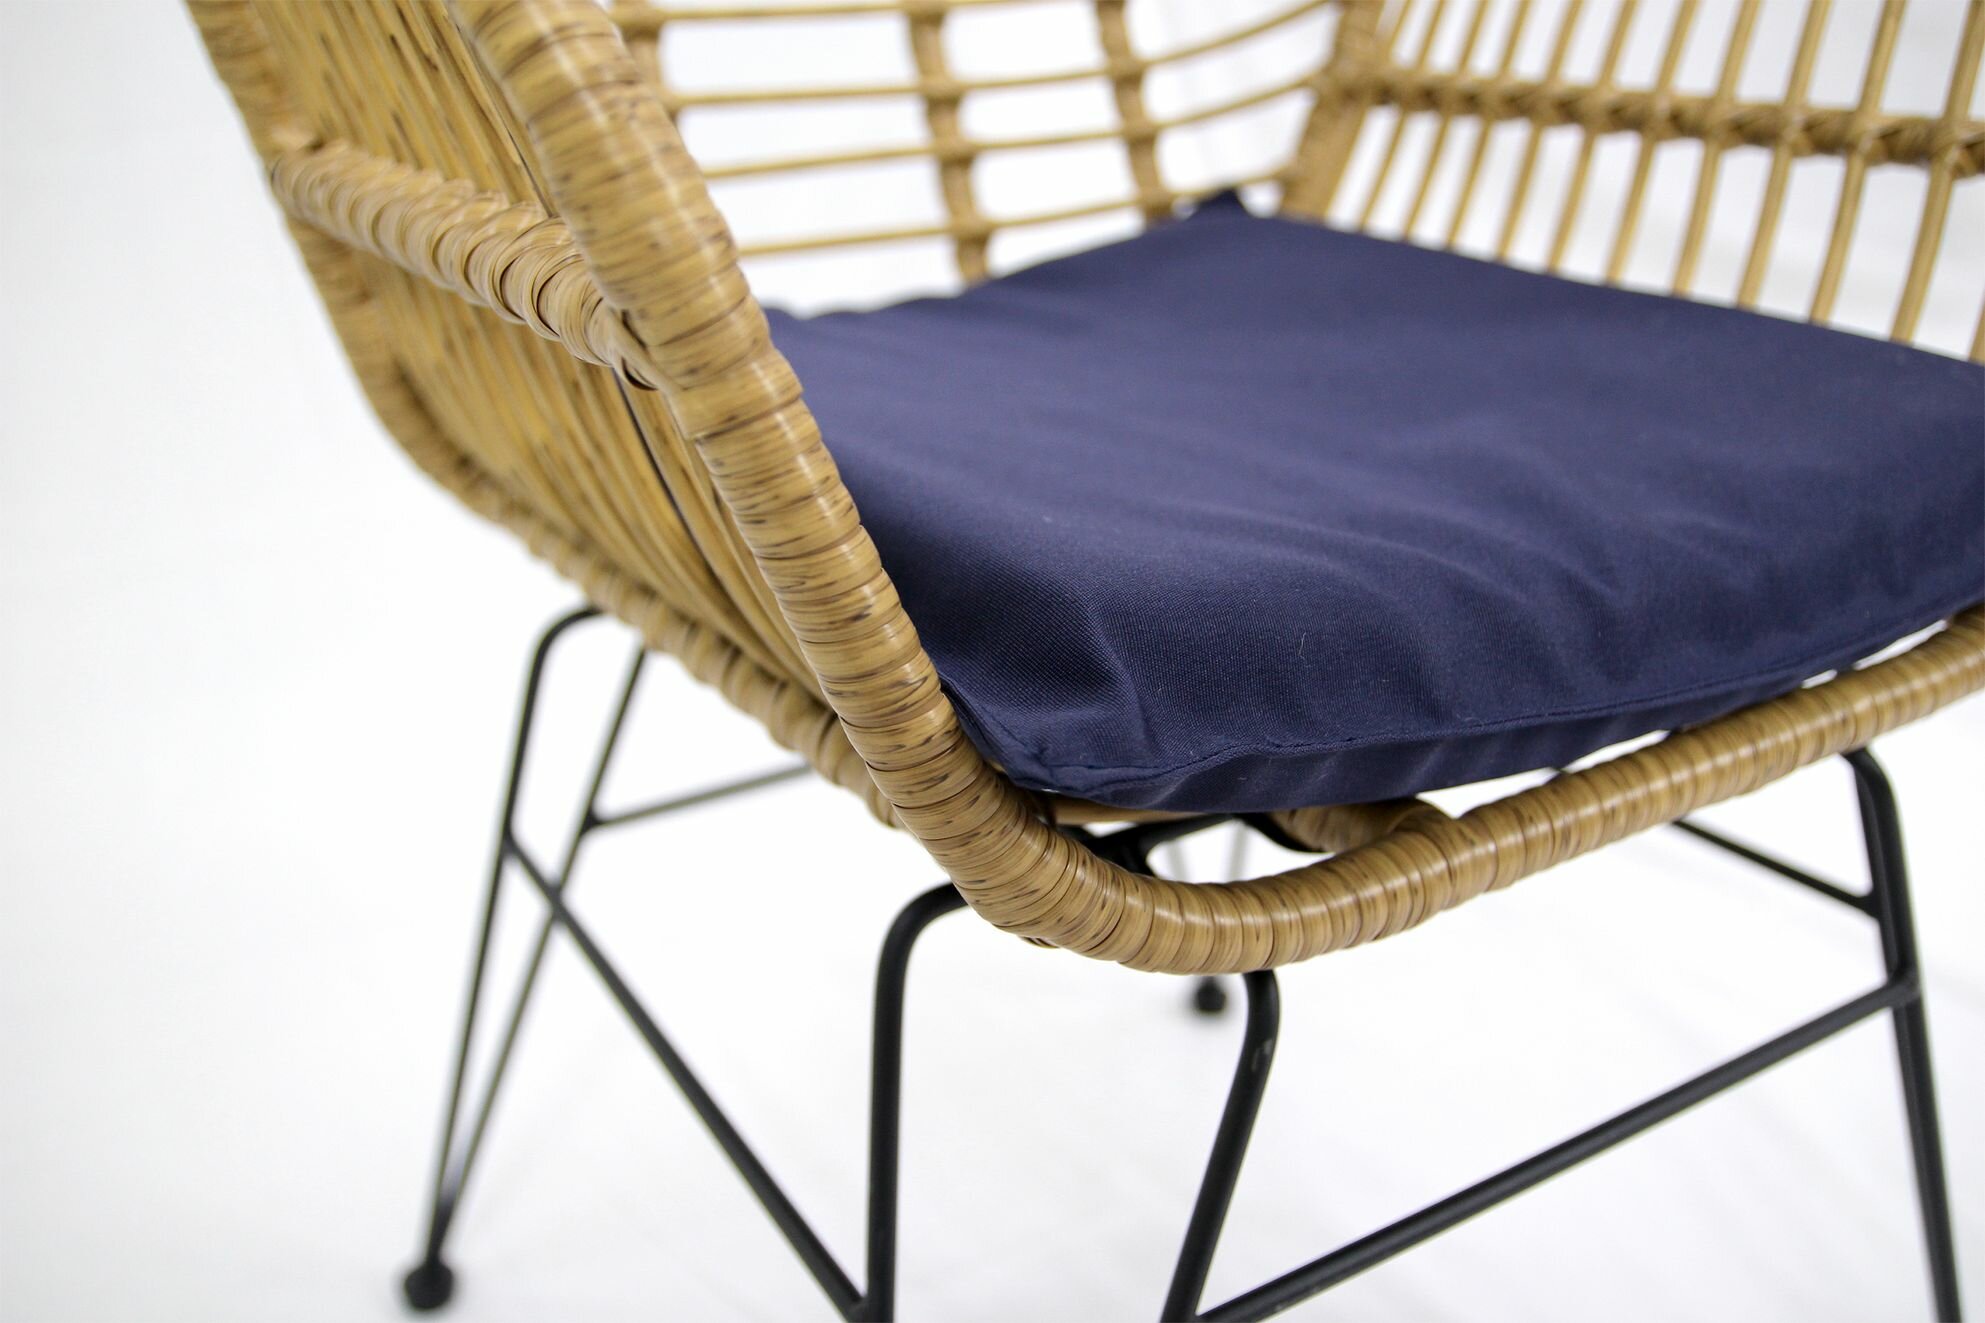 Набор садовой мебели для обеда Адриан GS008 искусственный ротанг бежевый: стол, кресла Без бренда - фото №11